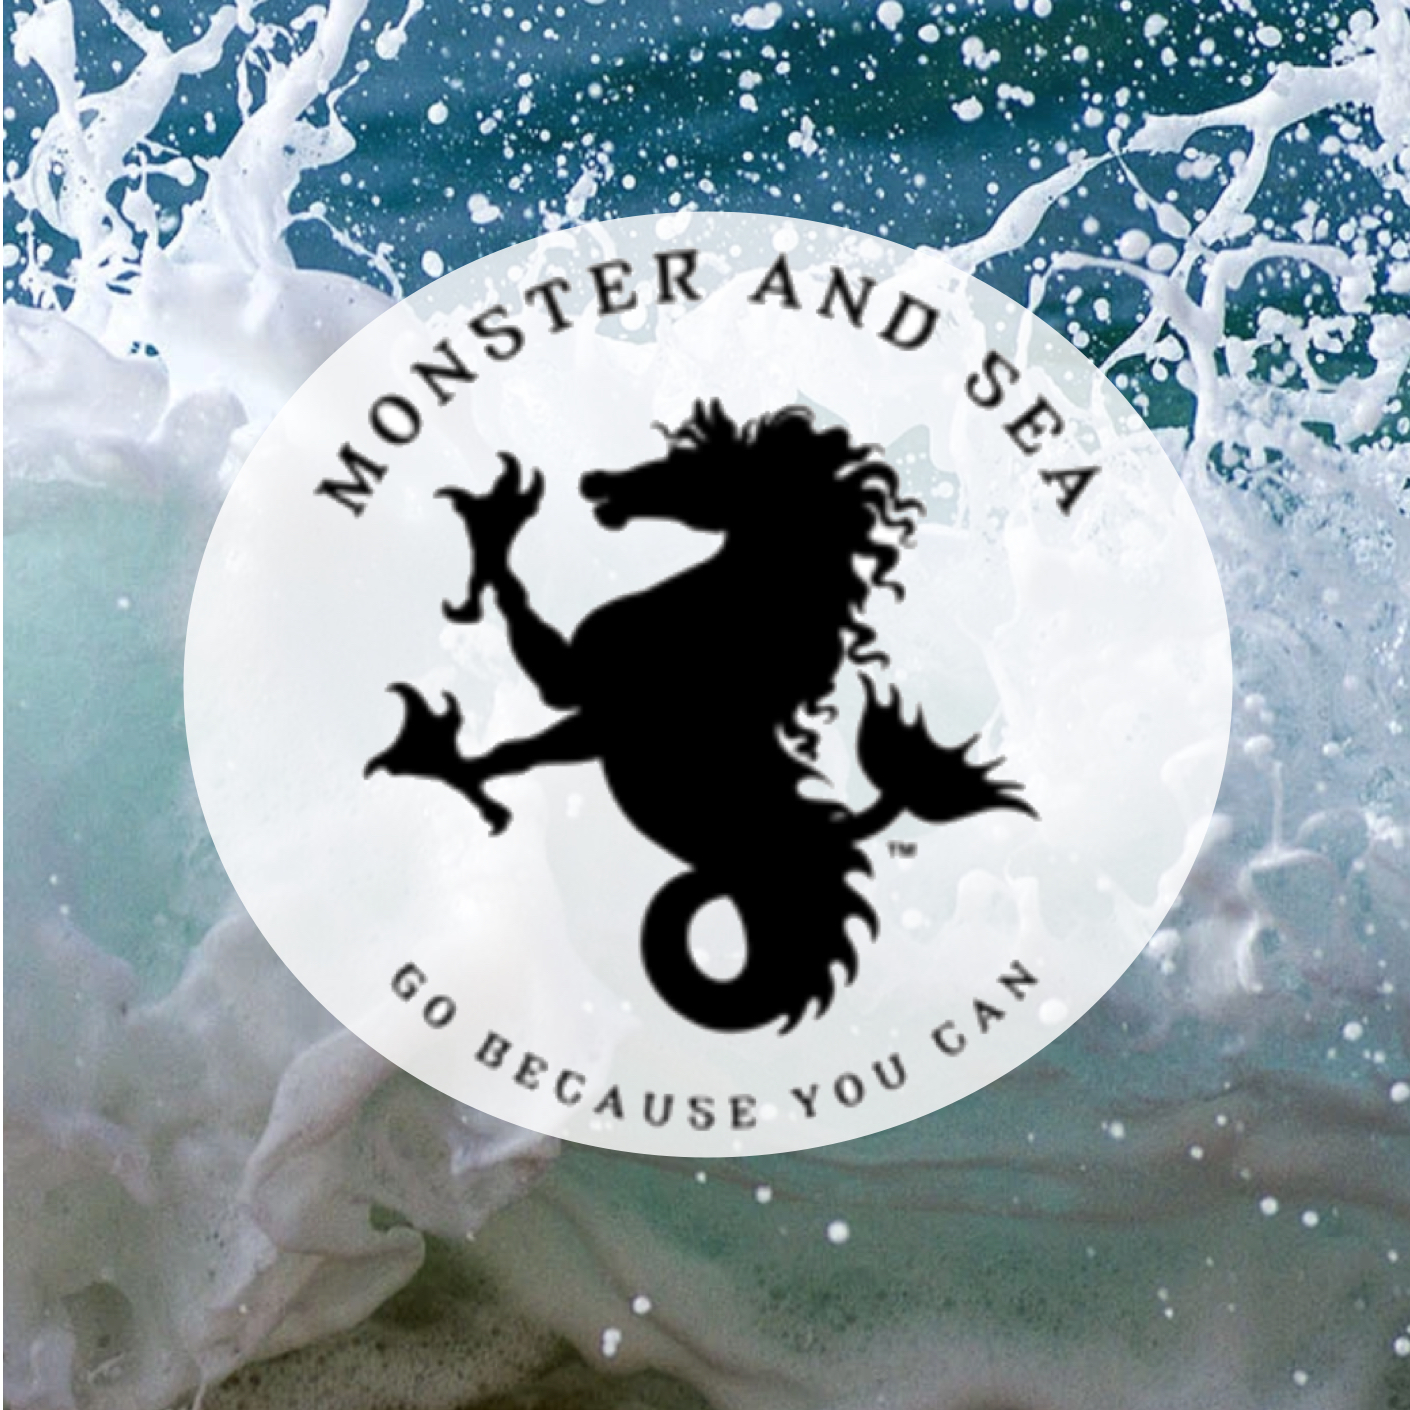 monsterand sea live swell shop